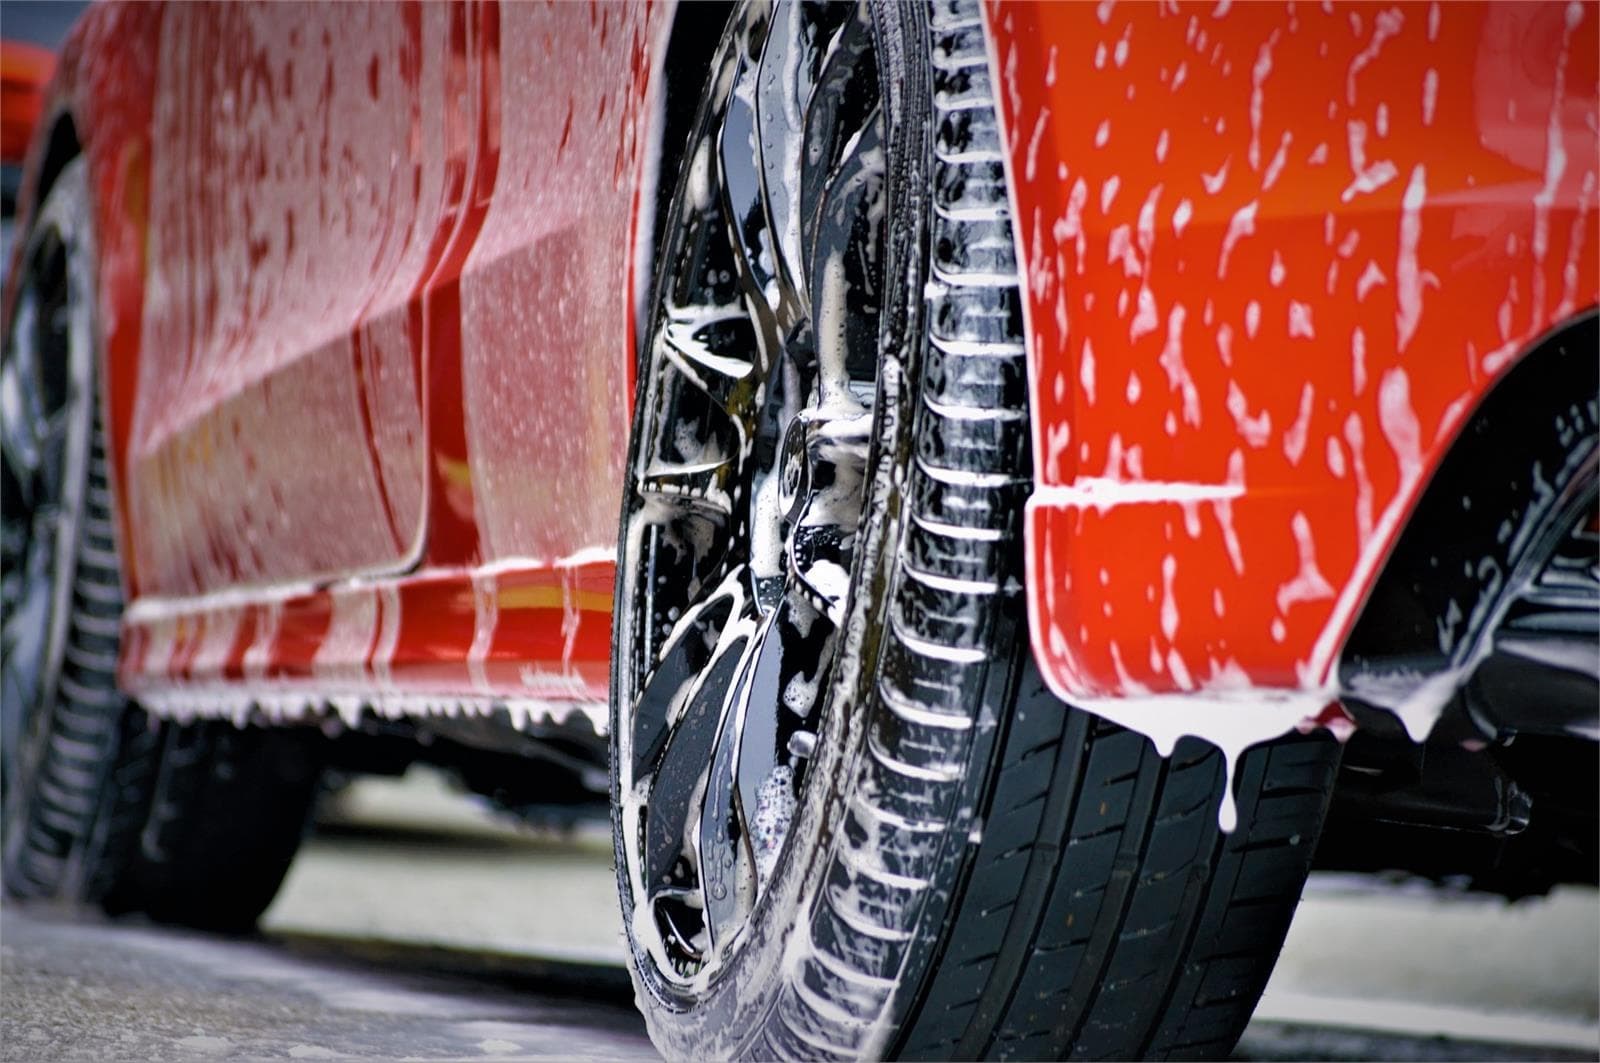 Disfruta de la comodidad de lavar tu coche en nuestras áreas de servicio - Imagen 2